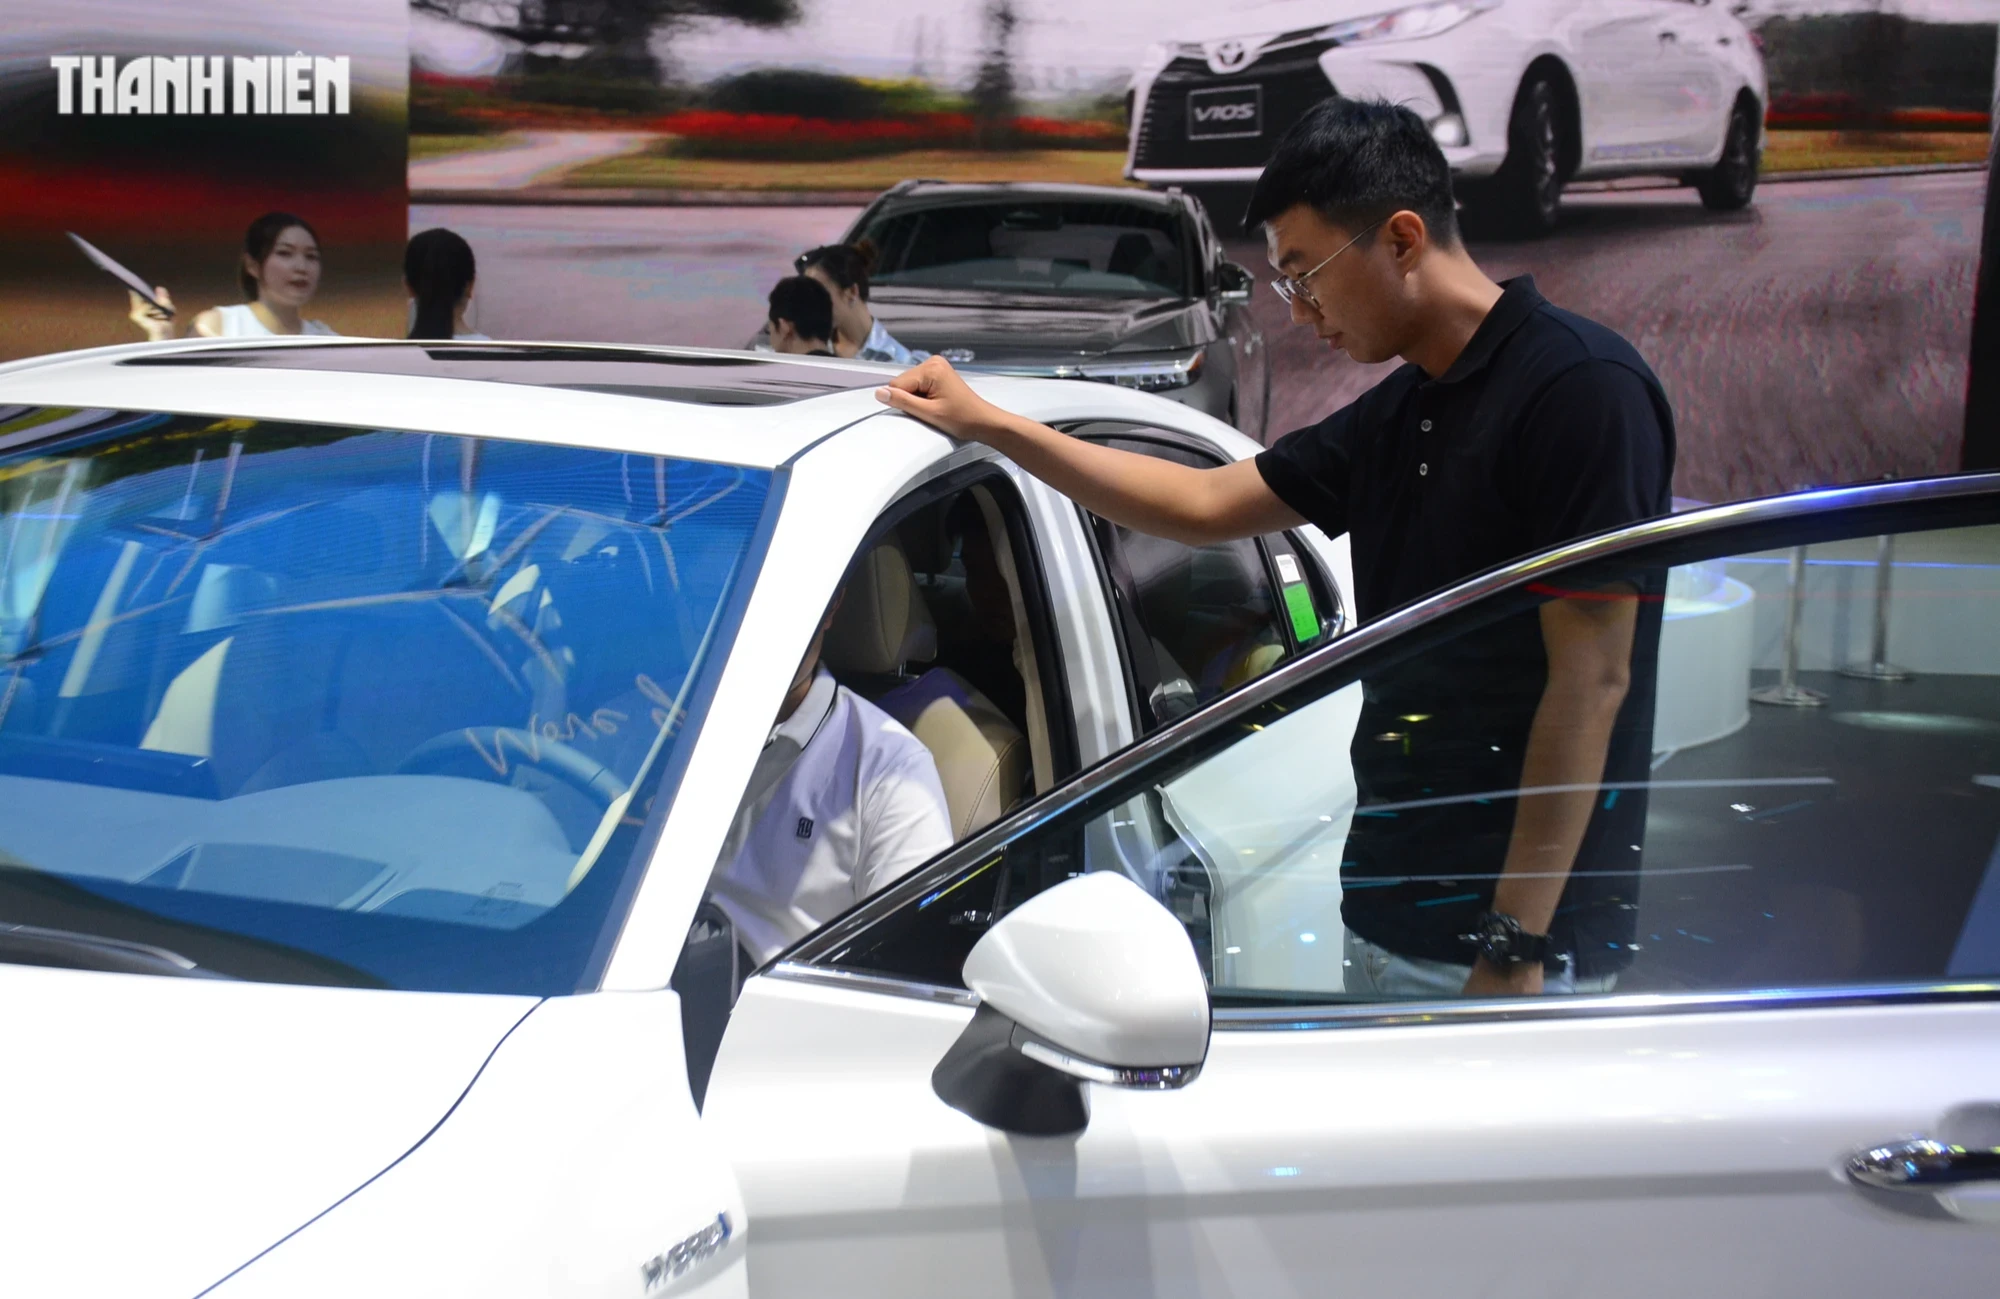 Tiêu thụ ô tô tại Việt Nam giảm 40%, phần lớn người mua chọn xe gầm cao- Ảnh 3.